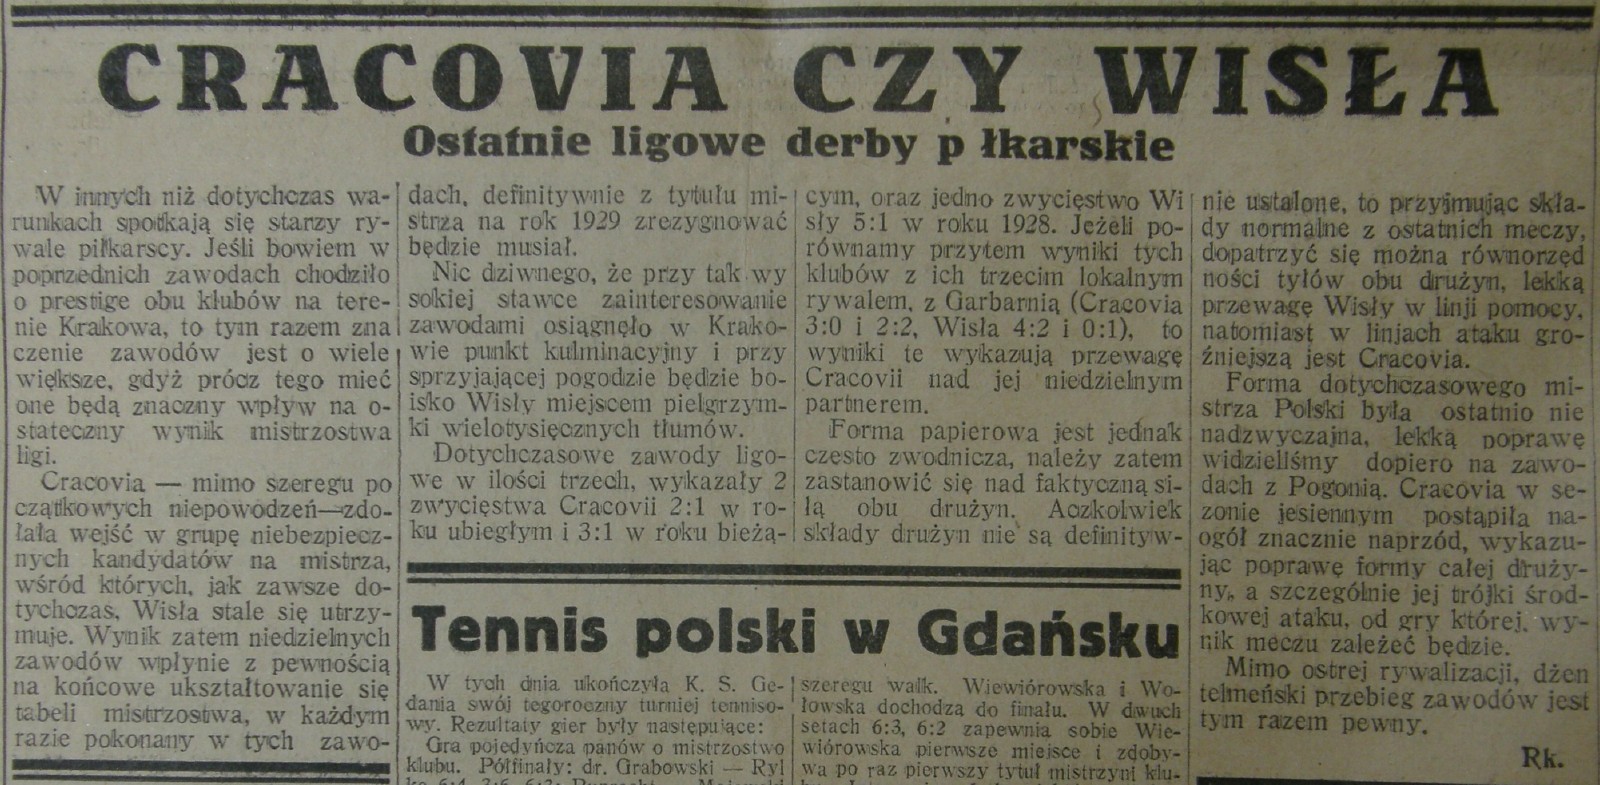 Zapowiedź meczu w warszawskim tygodniku Przegląd Sportowy cz.1